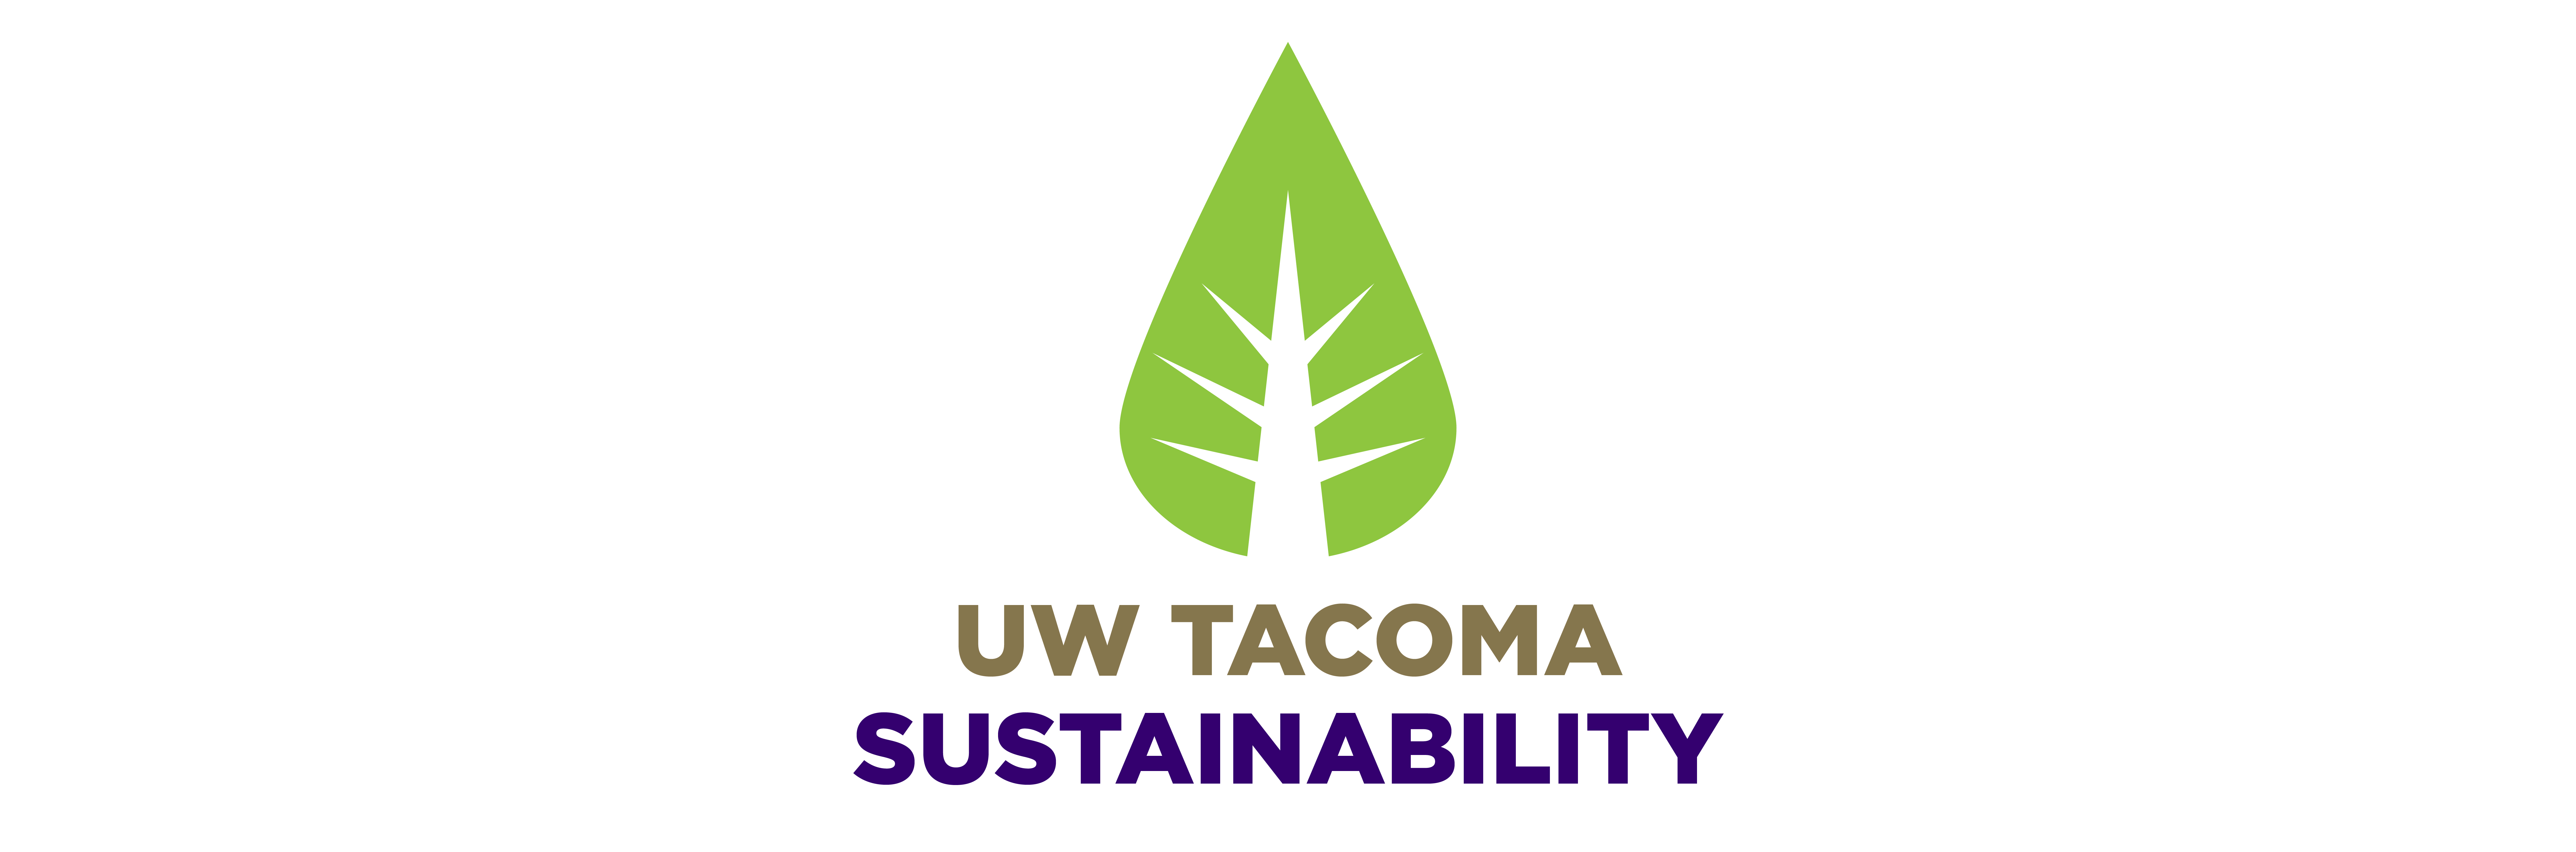 UW Tacoma Sustainability Logo